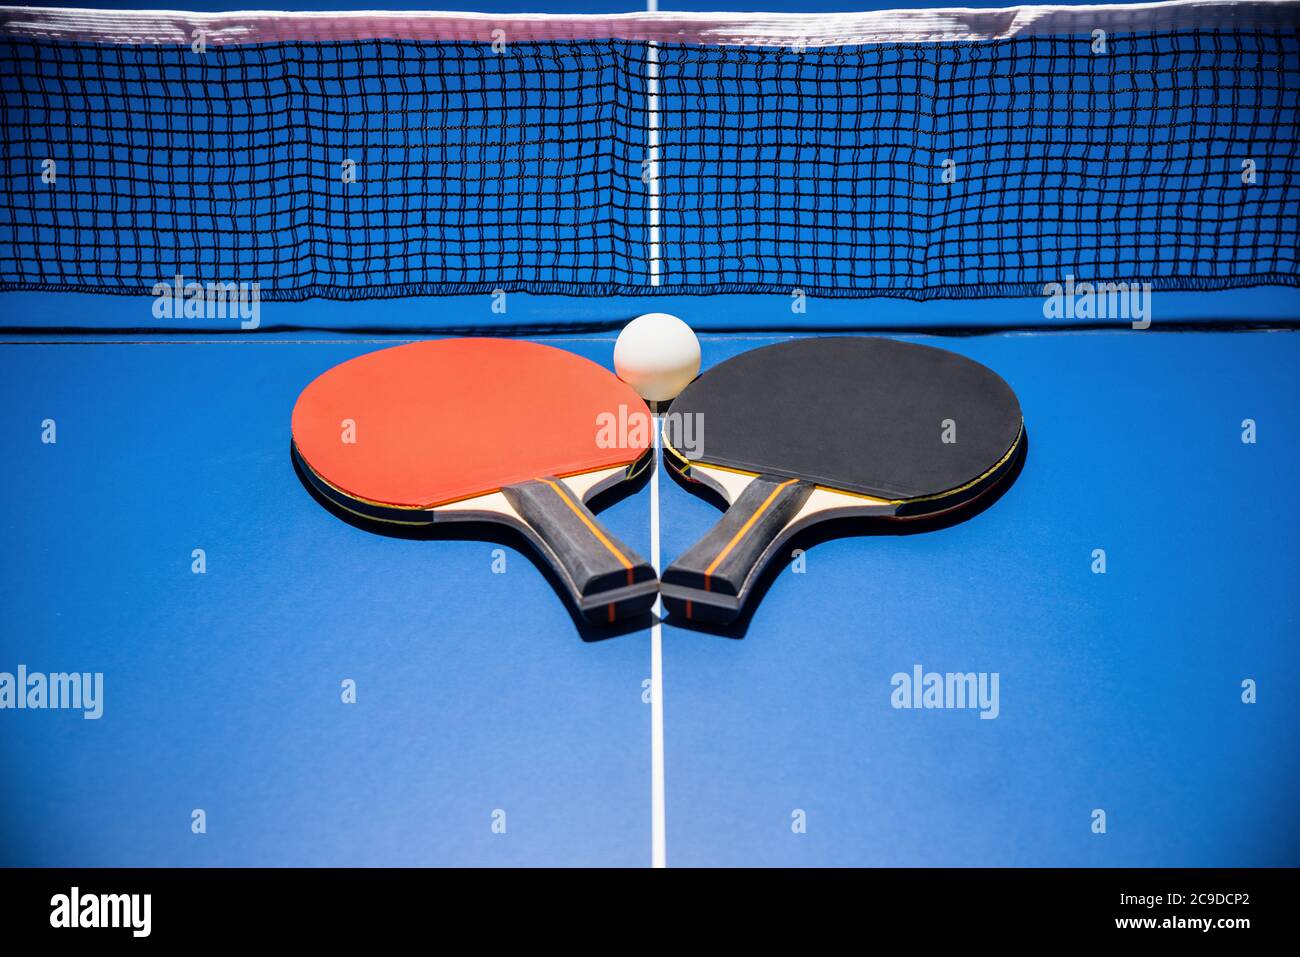 Schwarz und rot Tischtennisschläger und eine weiße Kugel auf der blauen Tischtennisplatte mit einem Netz, zwei Tischtennispaddel ist ein Sportwettkampfgerät i Stockfoto